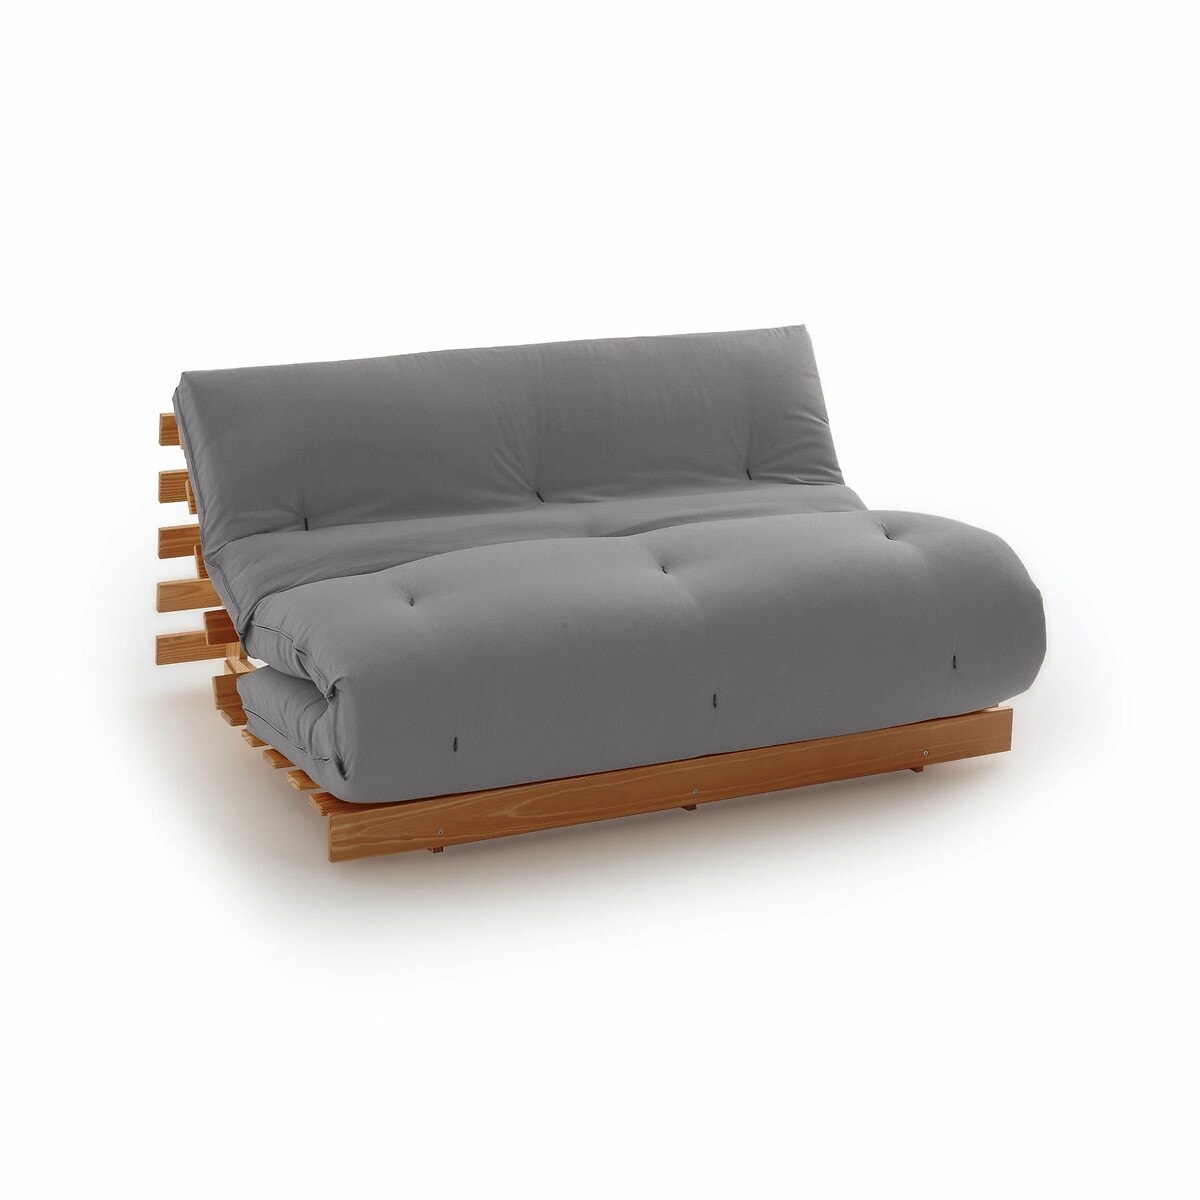 Σπίτι > Κλινοσκεπάσματα > Στρώματα > Στρώματα latex Στρώμα futon από latex για τον καναπέ THAÏ 90x190 cm